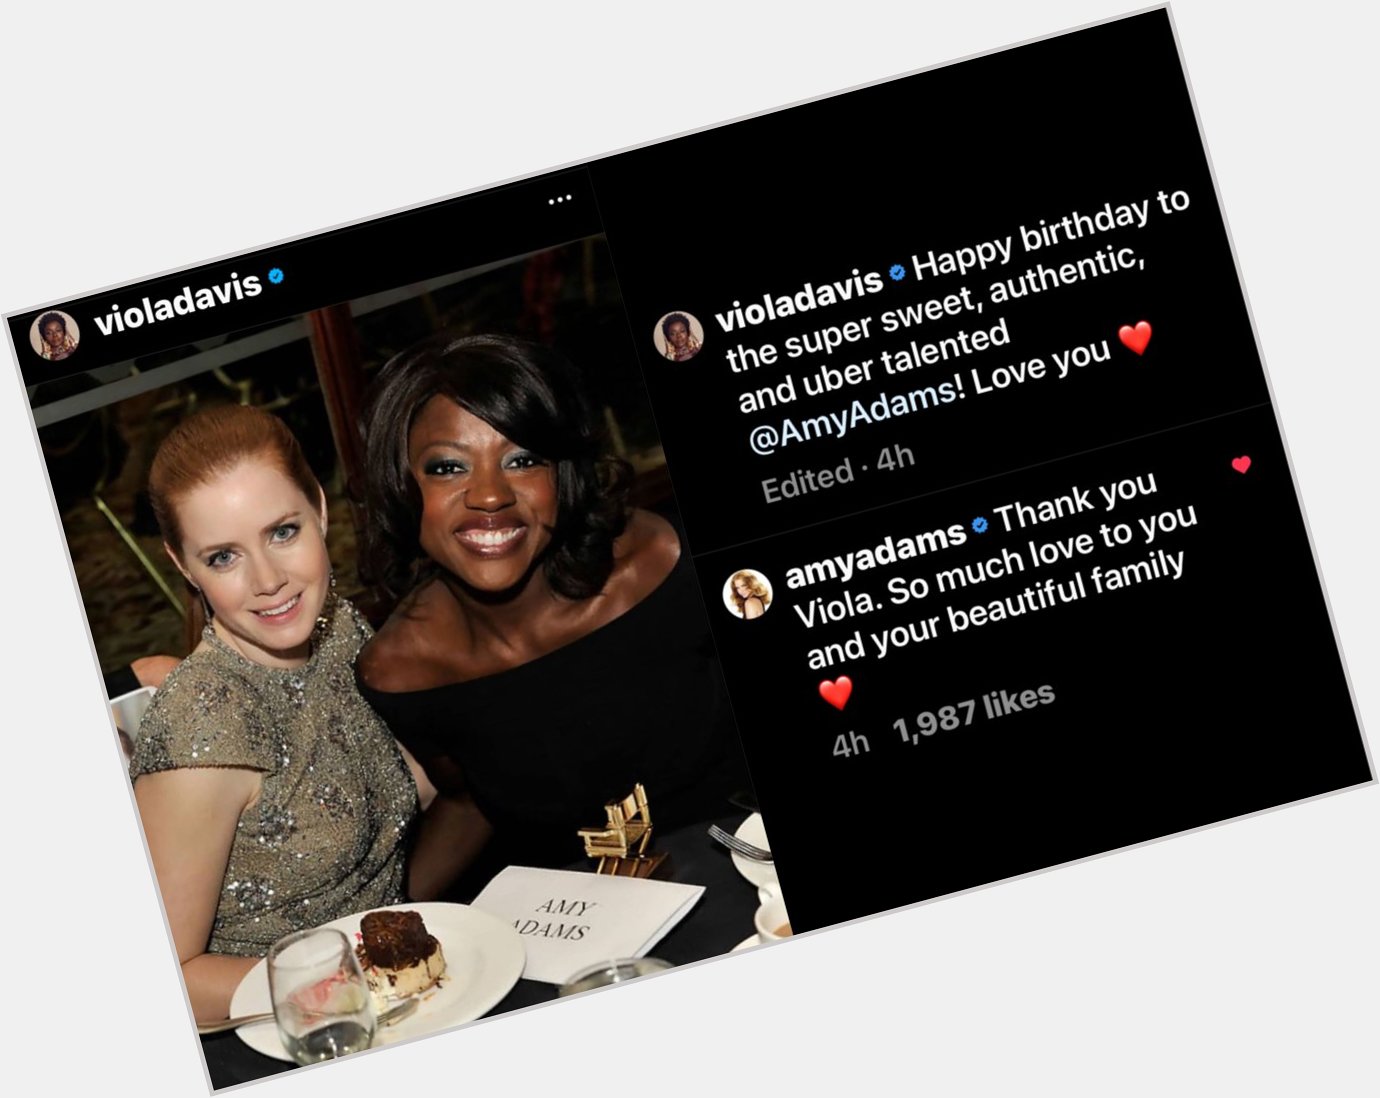 Viola Davis wishing Amy Adams happy birthday is so precious! I love our DCEU queens!  